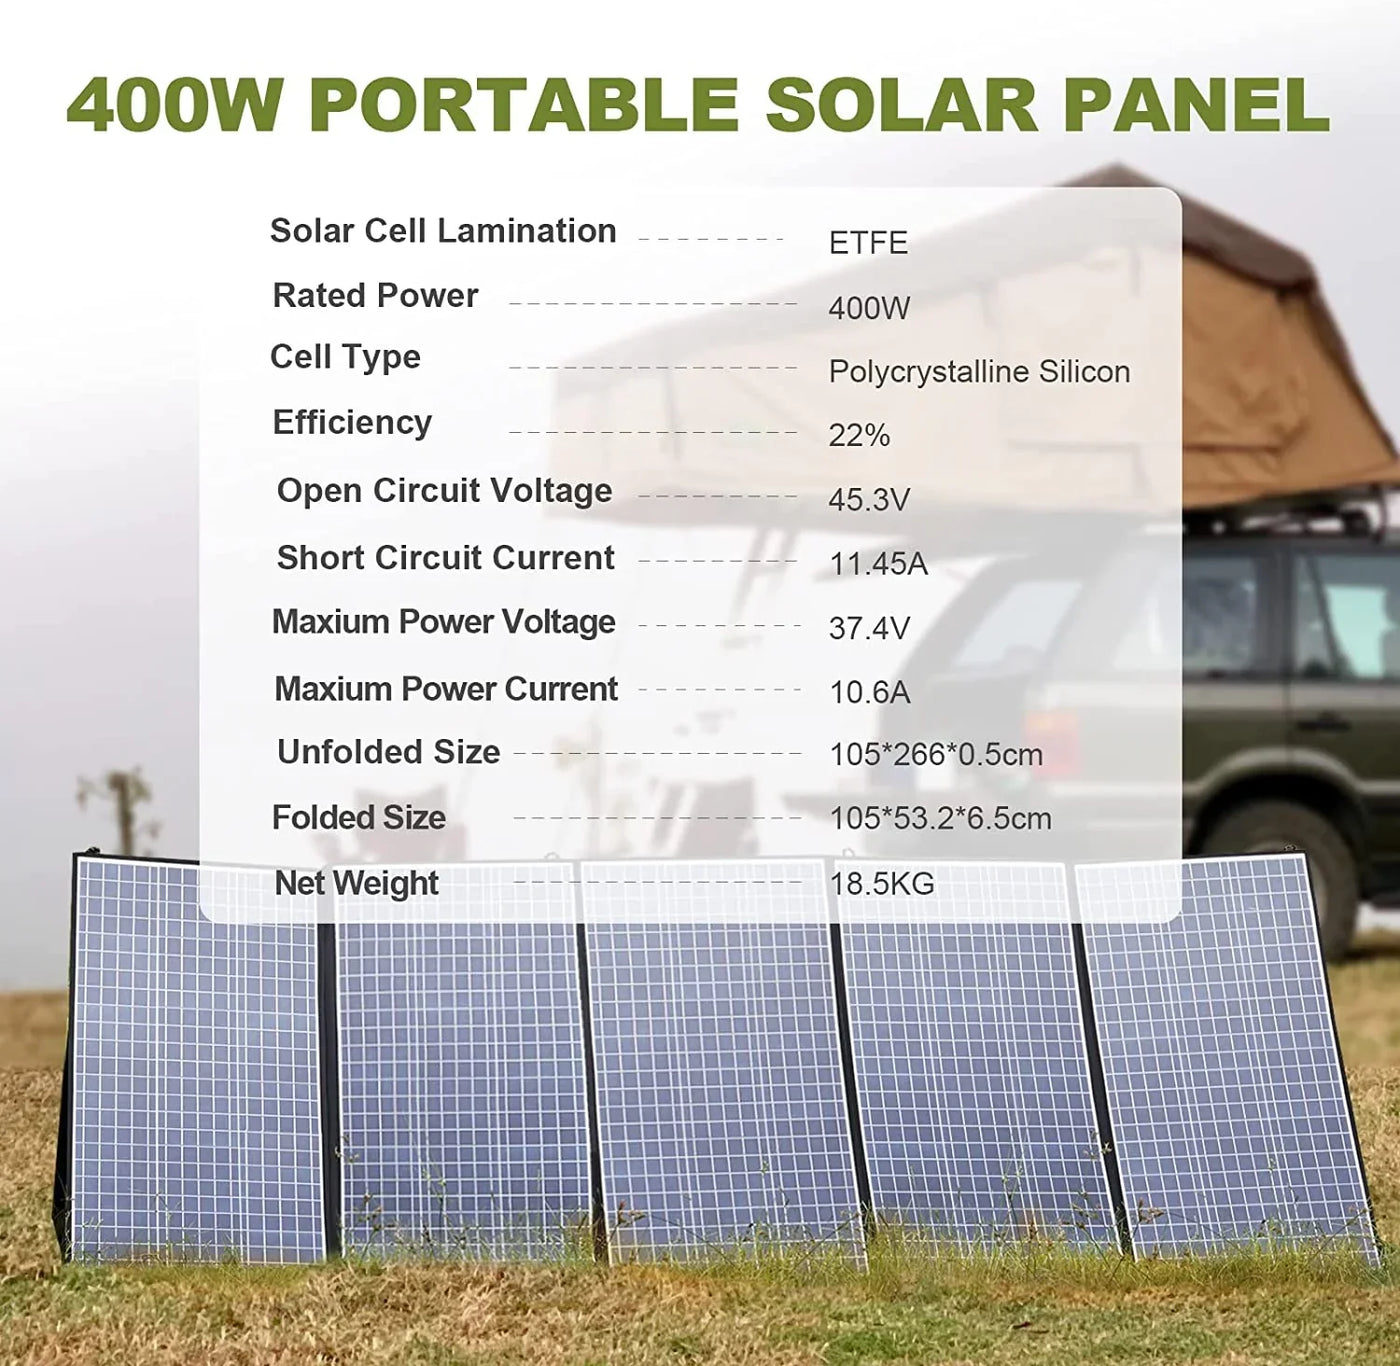 ALLPOWERS Kit Generatore Solare 2000W (S2000 + SP037 400W Pannello Solare)